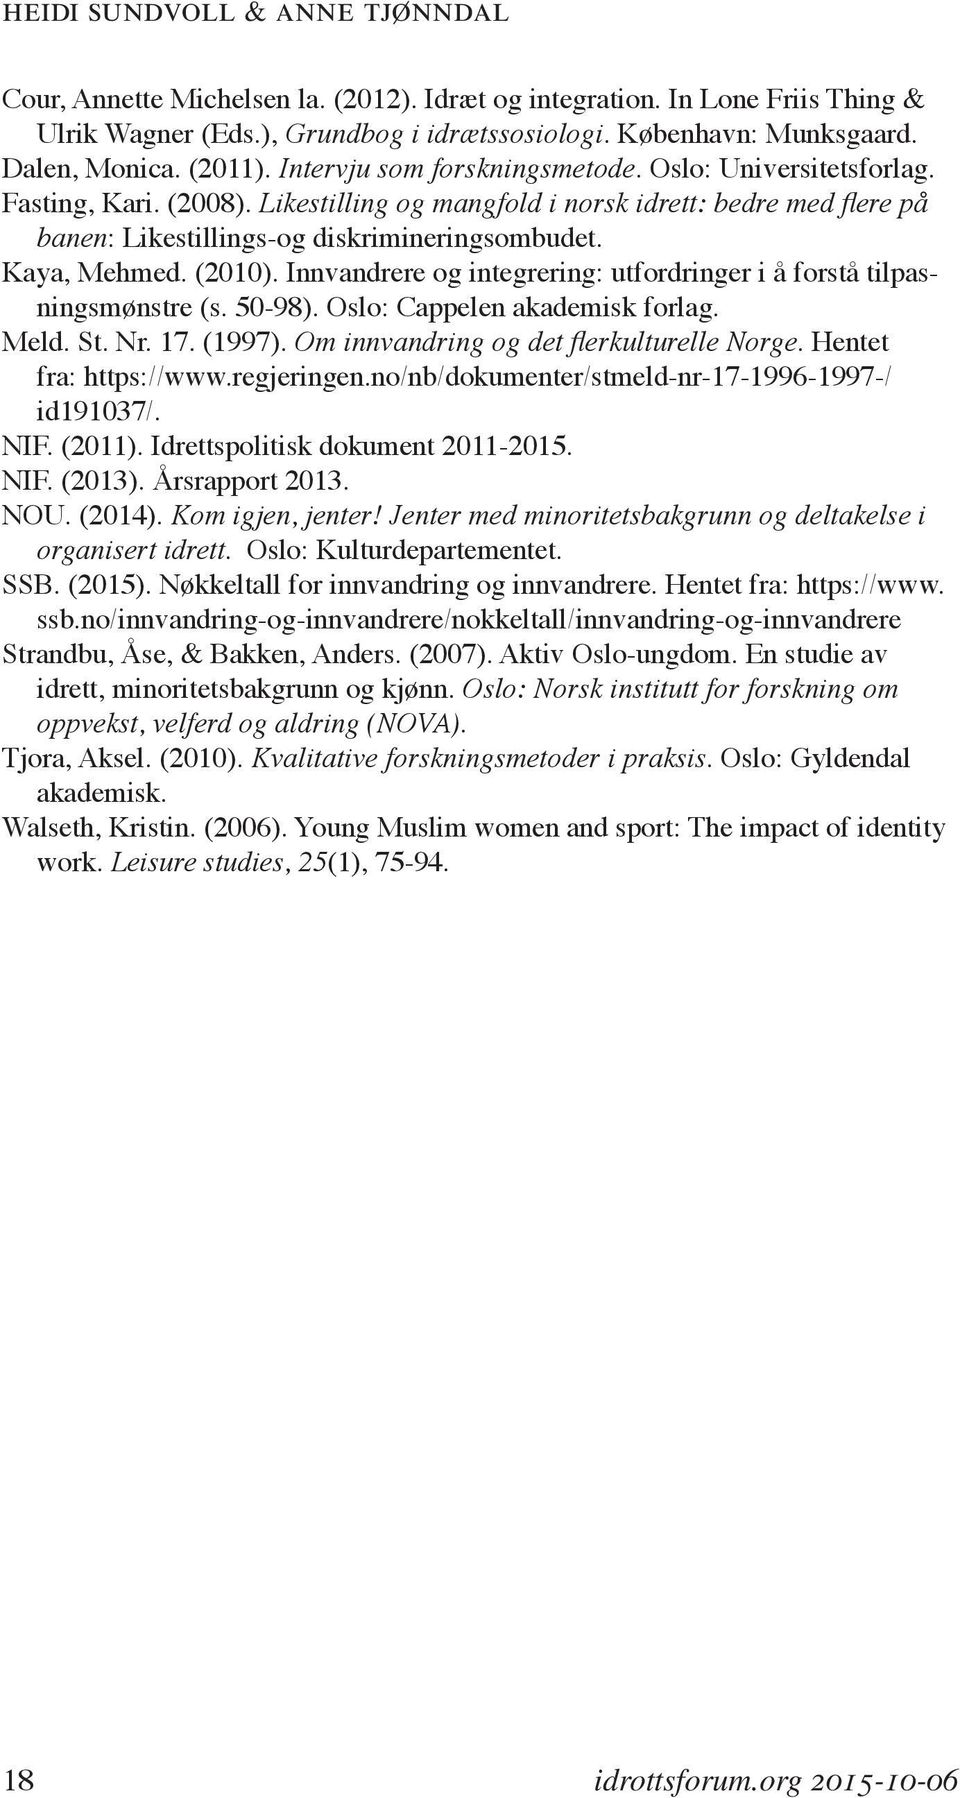 Kaya, Mehmed. (2010). Innvandrere og integrering: utfordringer i å forstå tilpasningsmønstre (s. 50-98). Oslo: Cappelen akademisk forlag. Meld. St. Nr. 17. (1997).